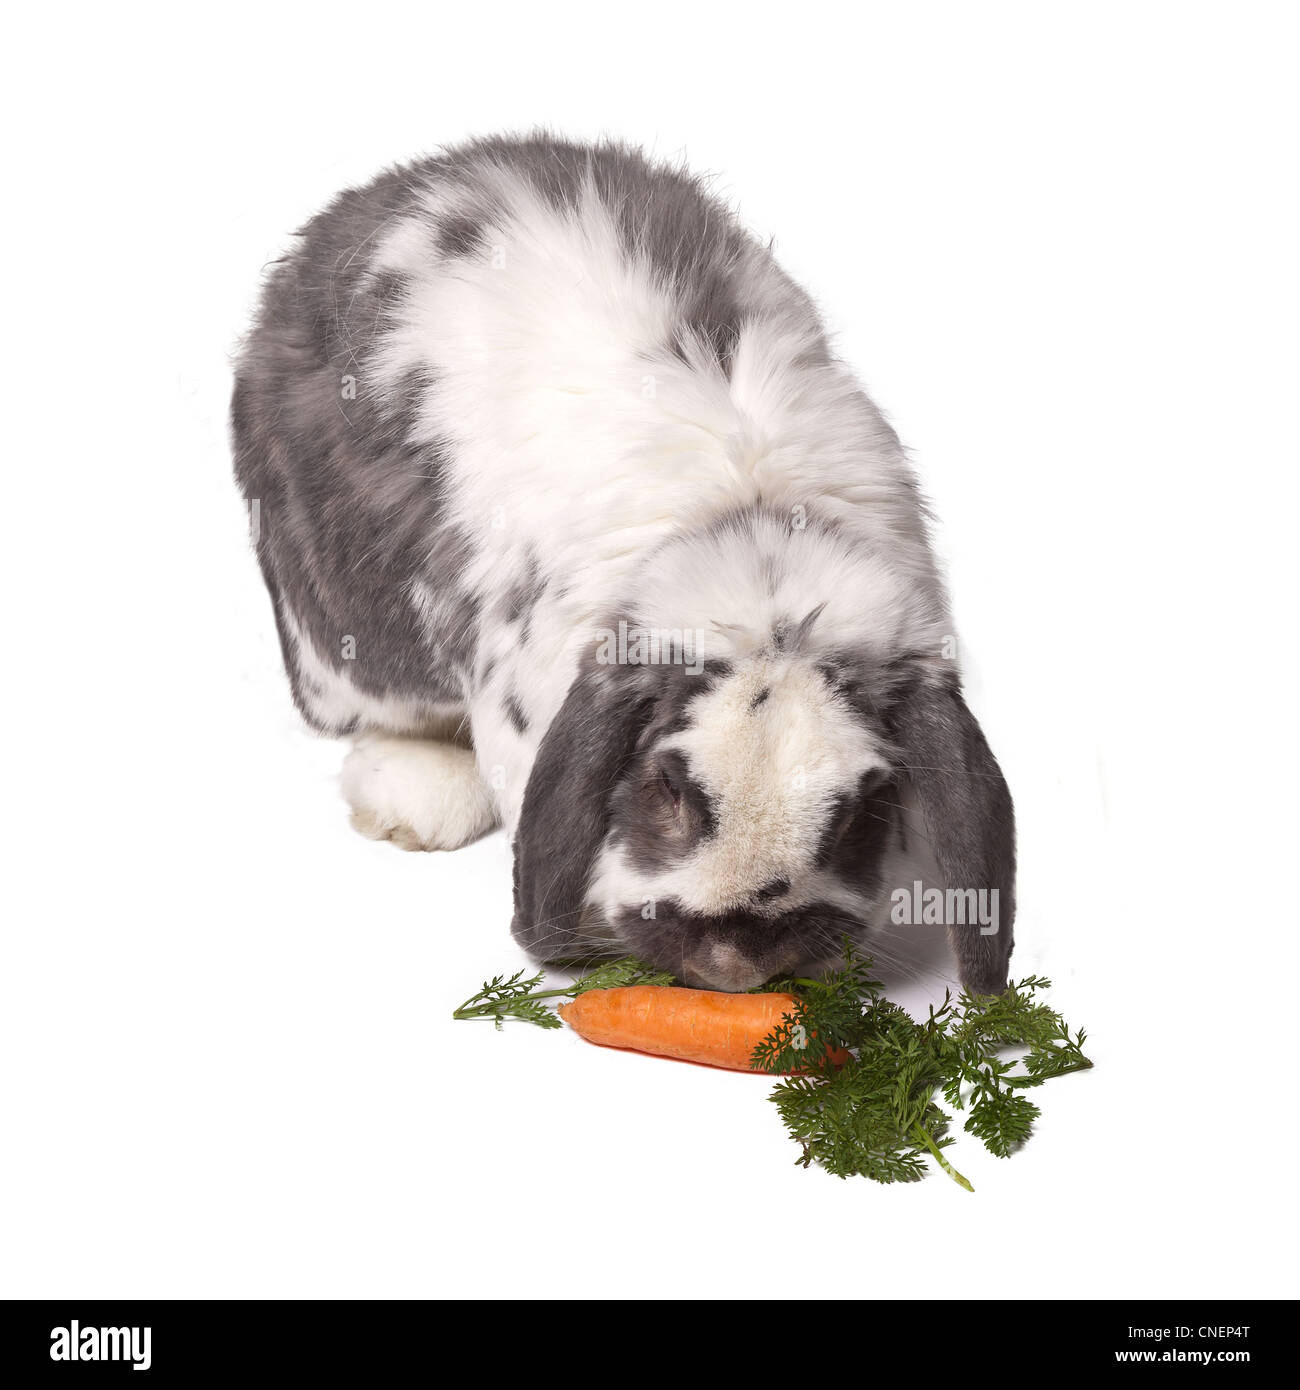 Süße grau und weiß Lop Eared Hase biegen ab, um Karotten und grünem Gemüse Essen auf weißem Hintergrund Stockfoto